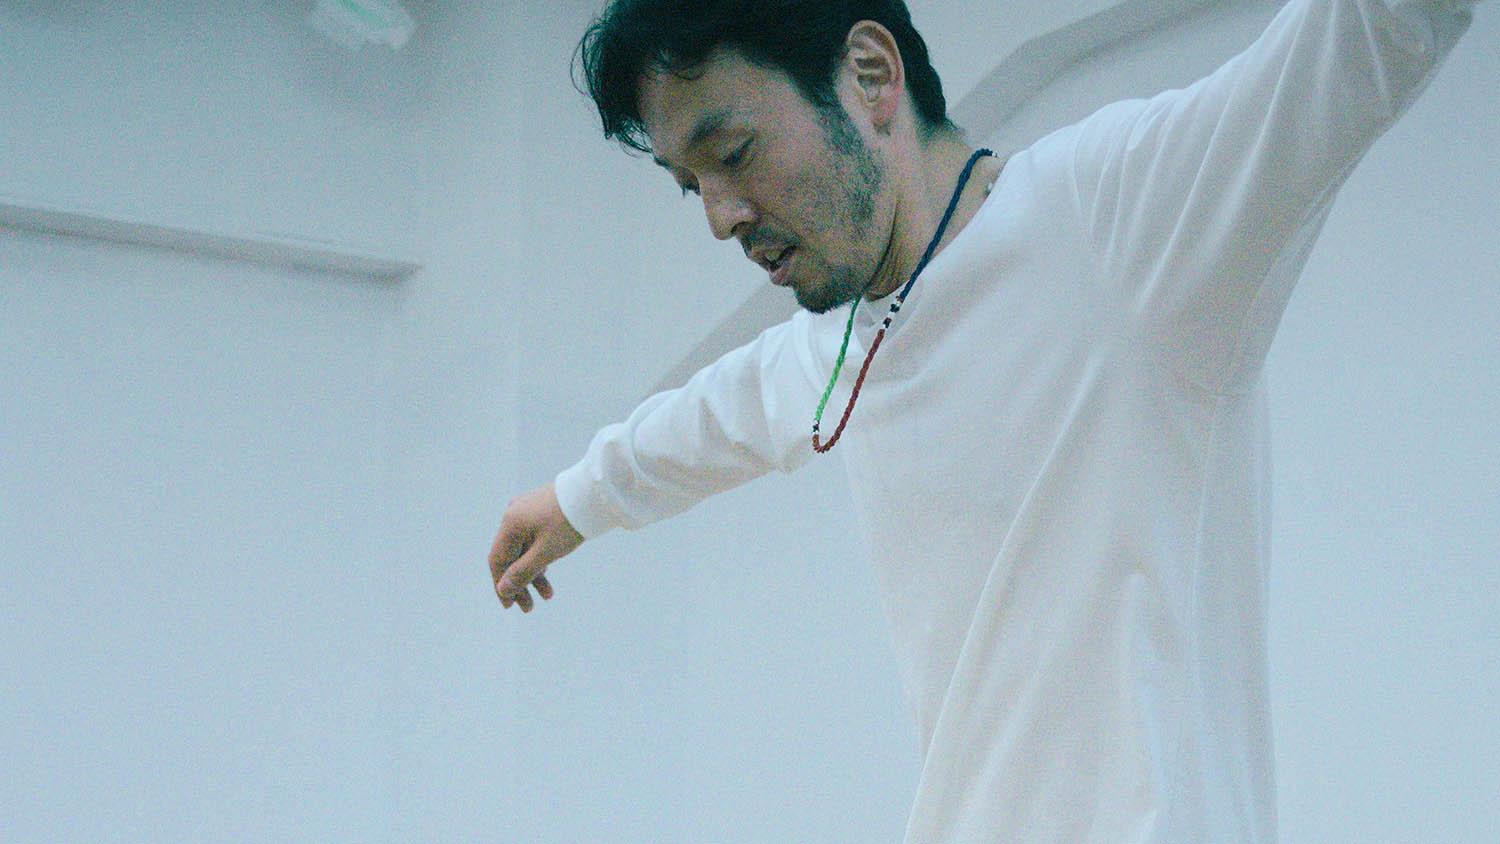 世界的タップダンサー熊谷和徳の道は、１本の映画から始まった【前編】